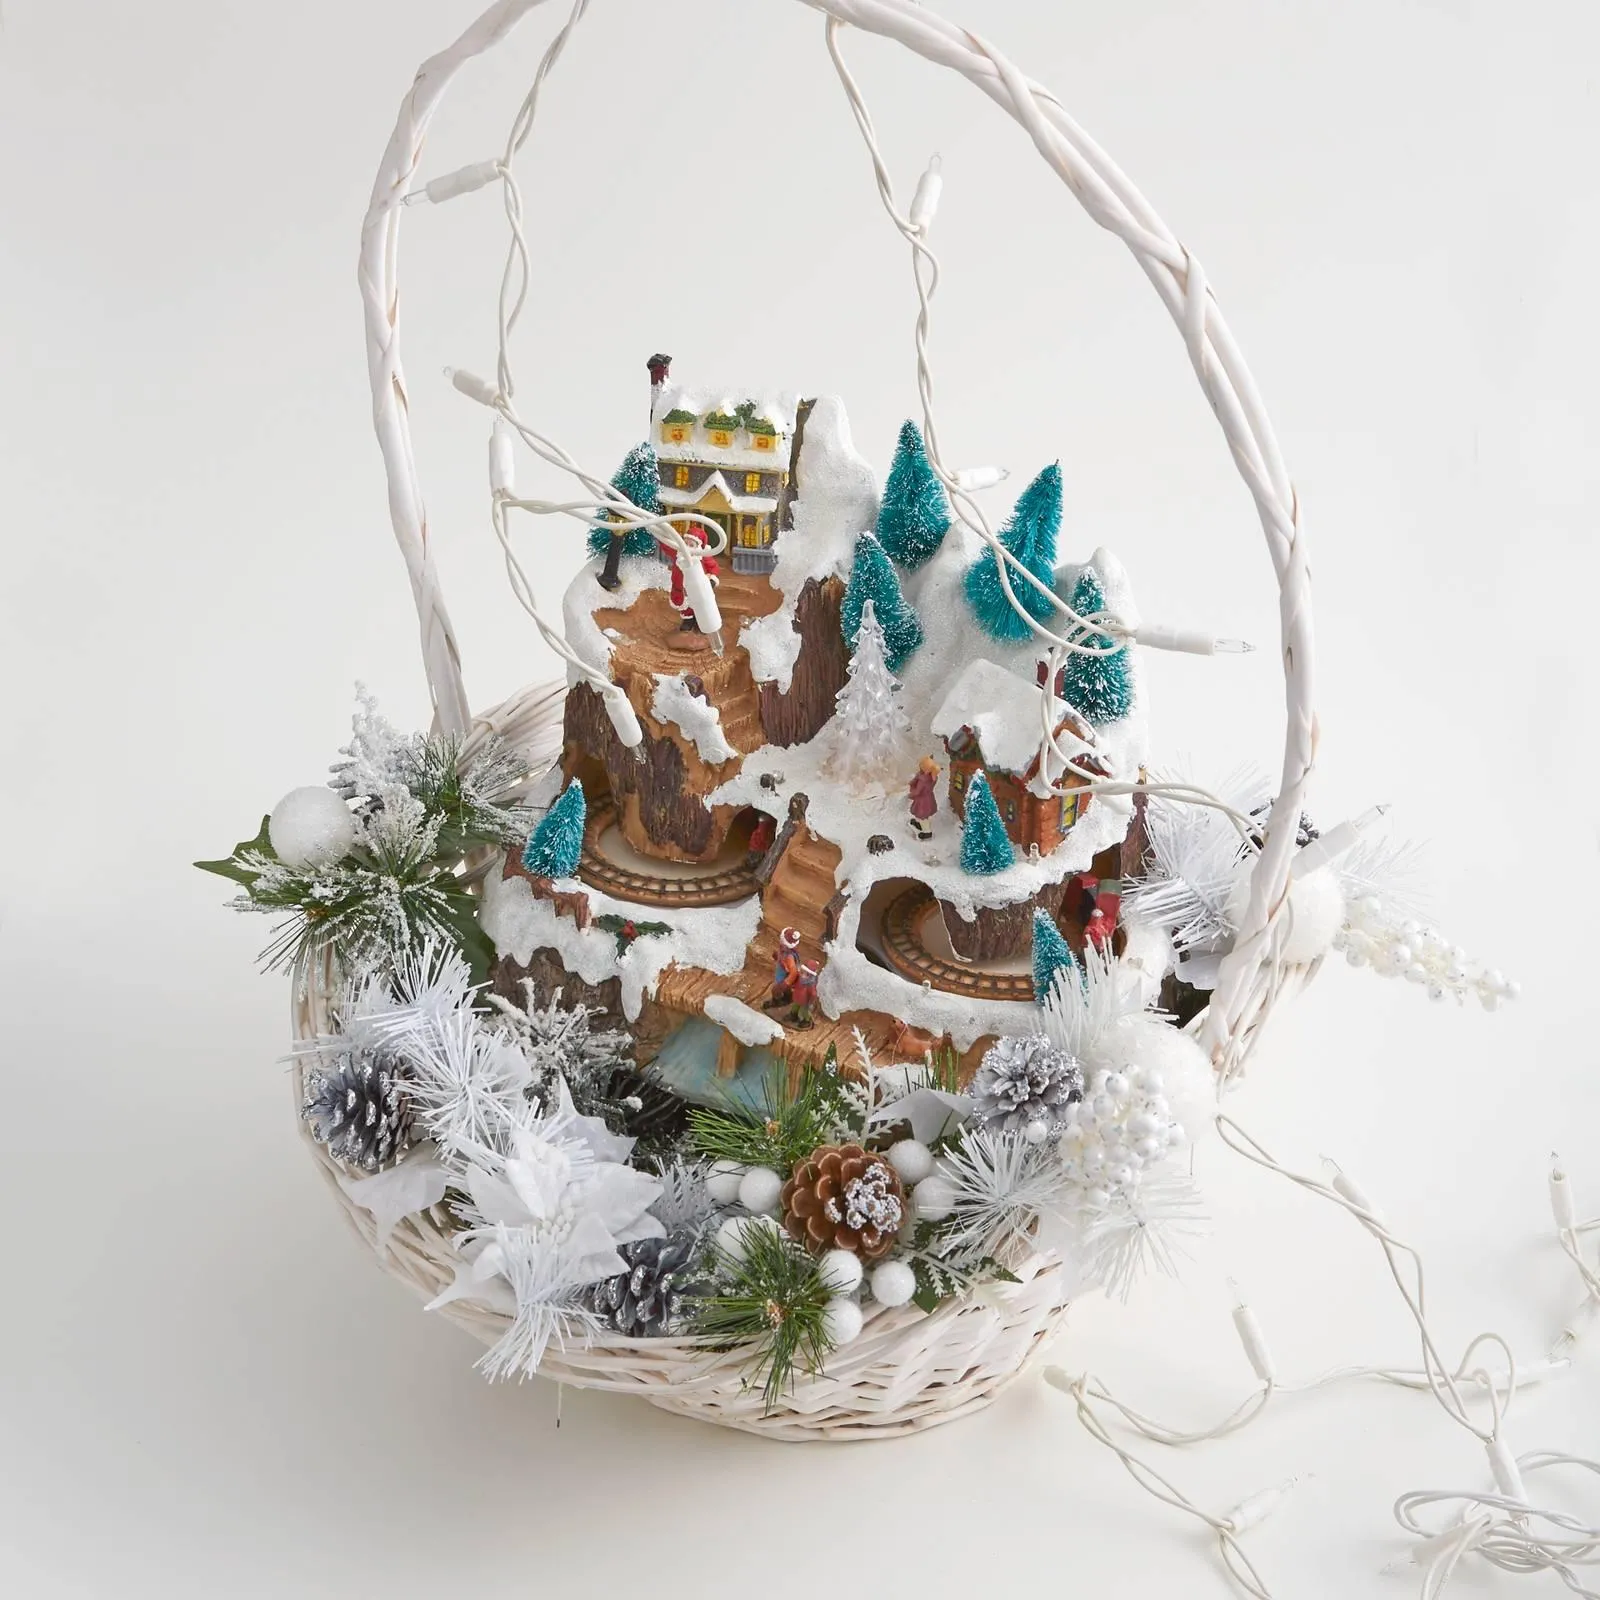 Decorazioni: villaggio di Natale e presepe nella cesta - Cose di Casa